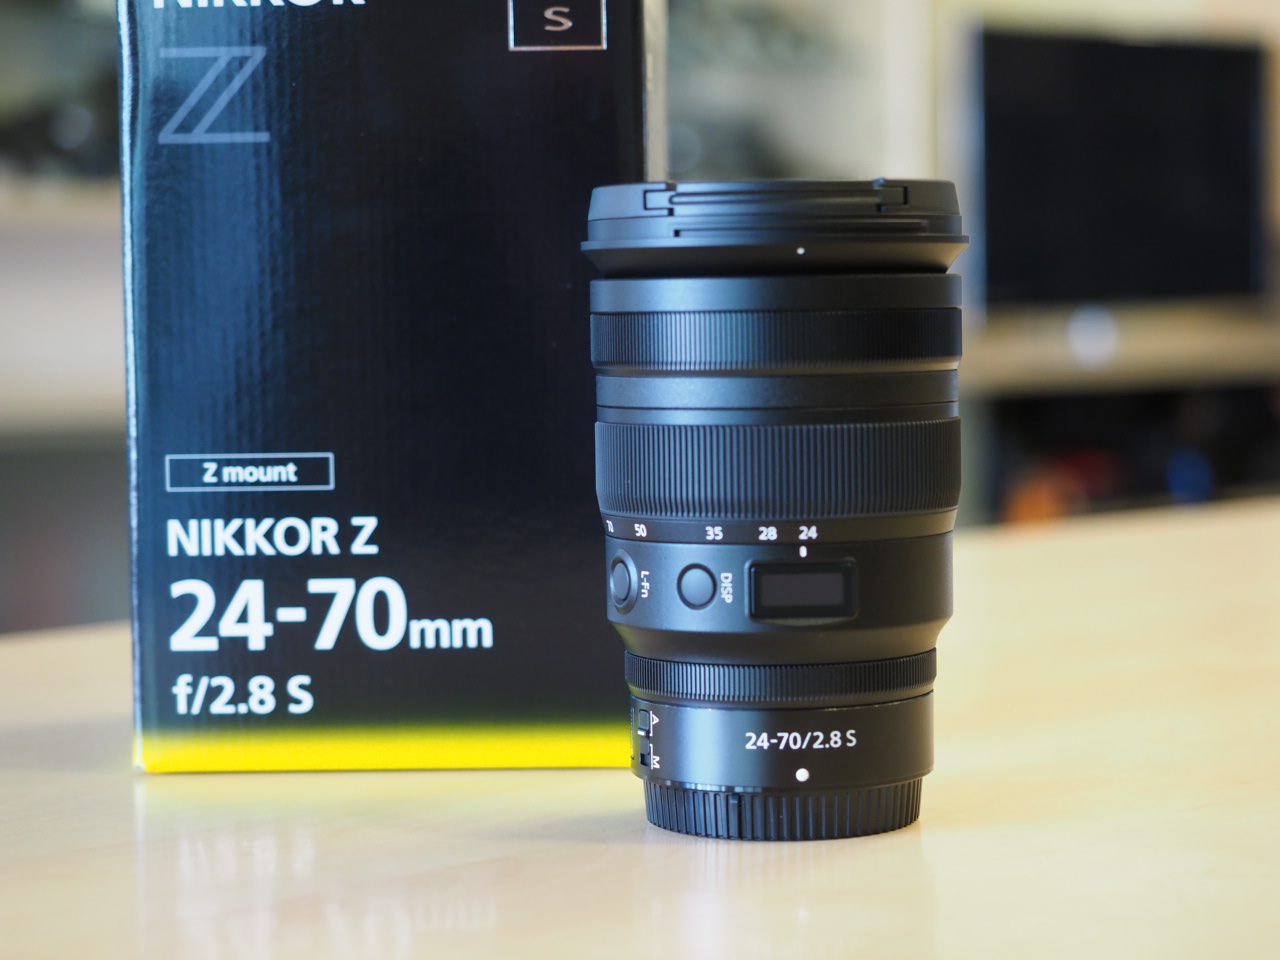 Nikon NIKKOR Z 24-70mm f/2.8 S lens now in stock - Nikon Rumors